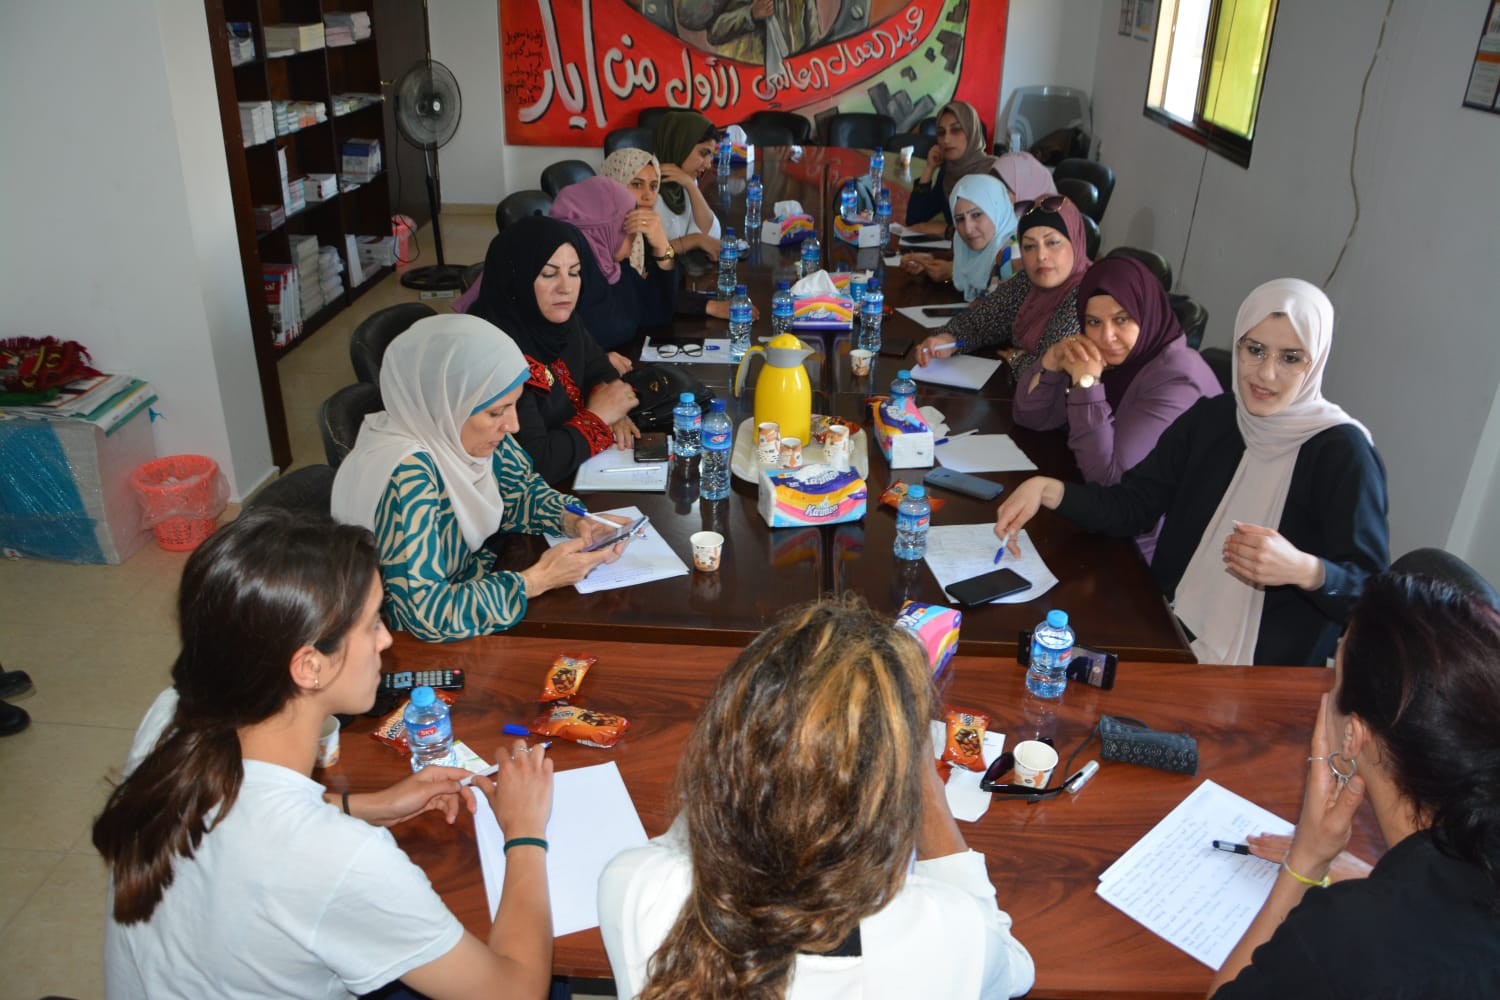 اختتام أعمال مؤتمر المرأة  بين غزة وإيطاليا في قطاع غزة بمشاركة الوفد الإيطالي النسوي 1.jpg